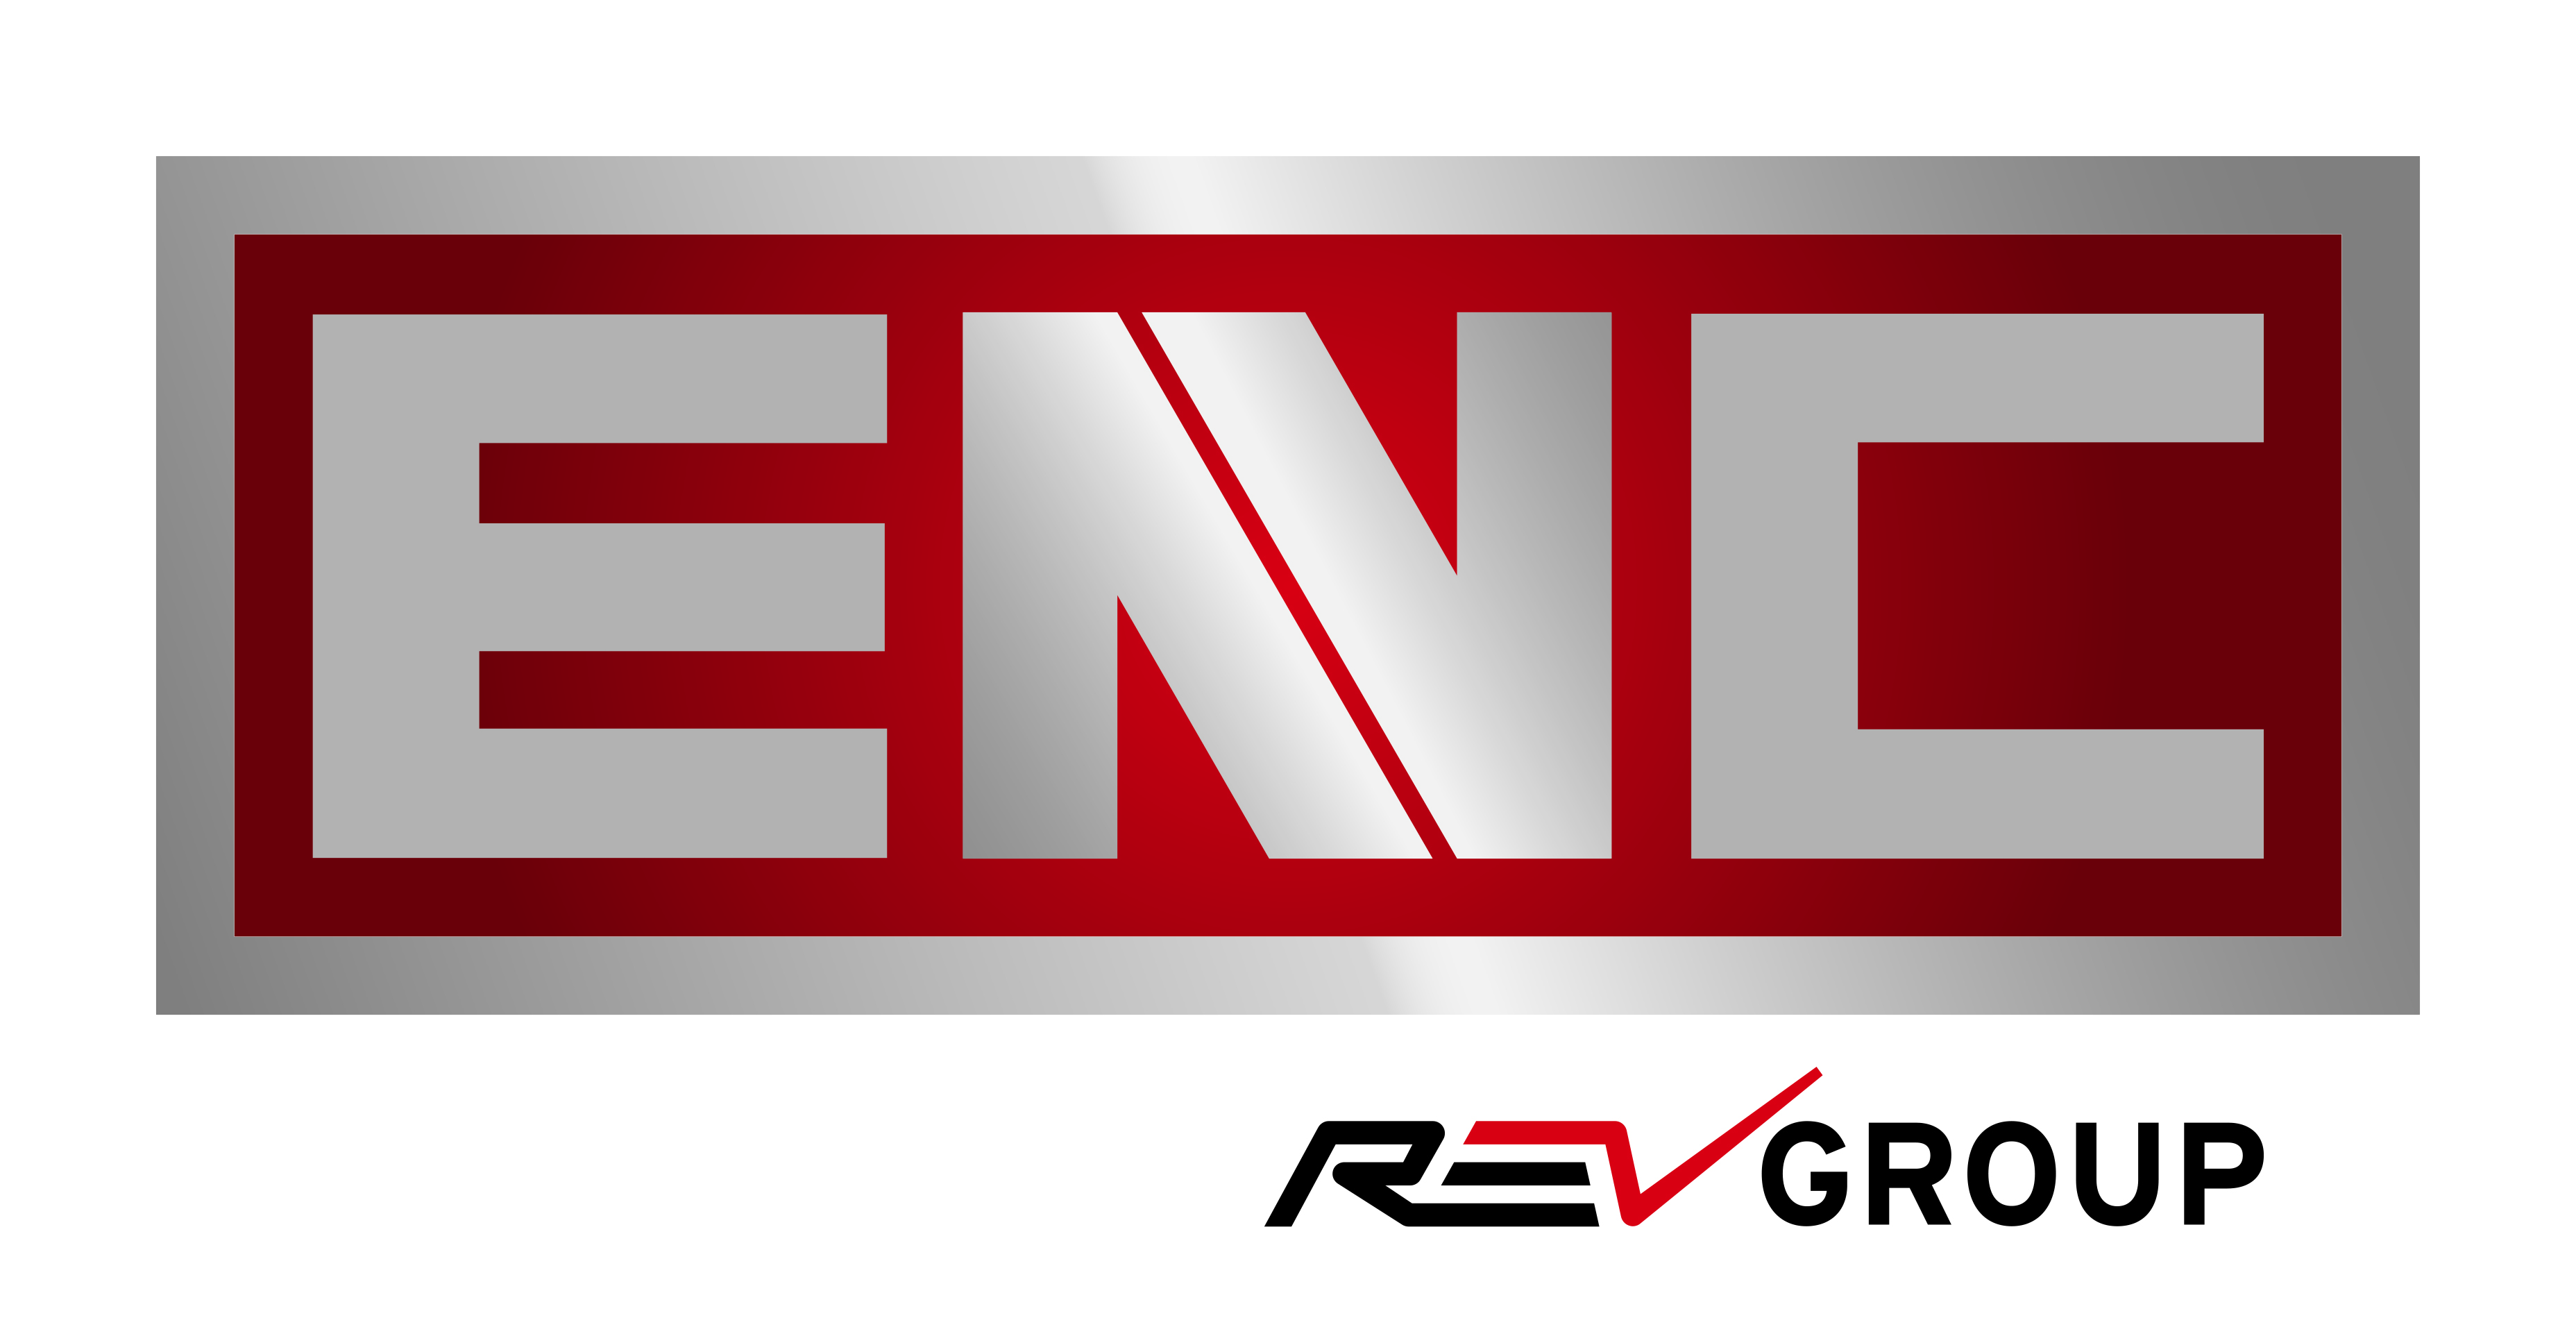 logo ENCrevgroup California